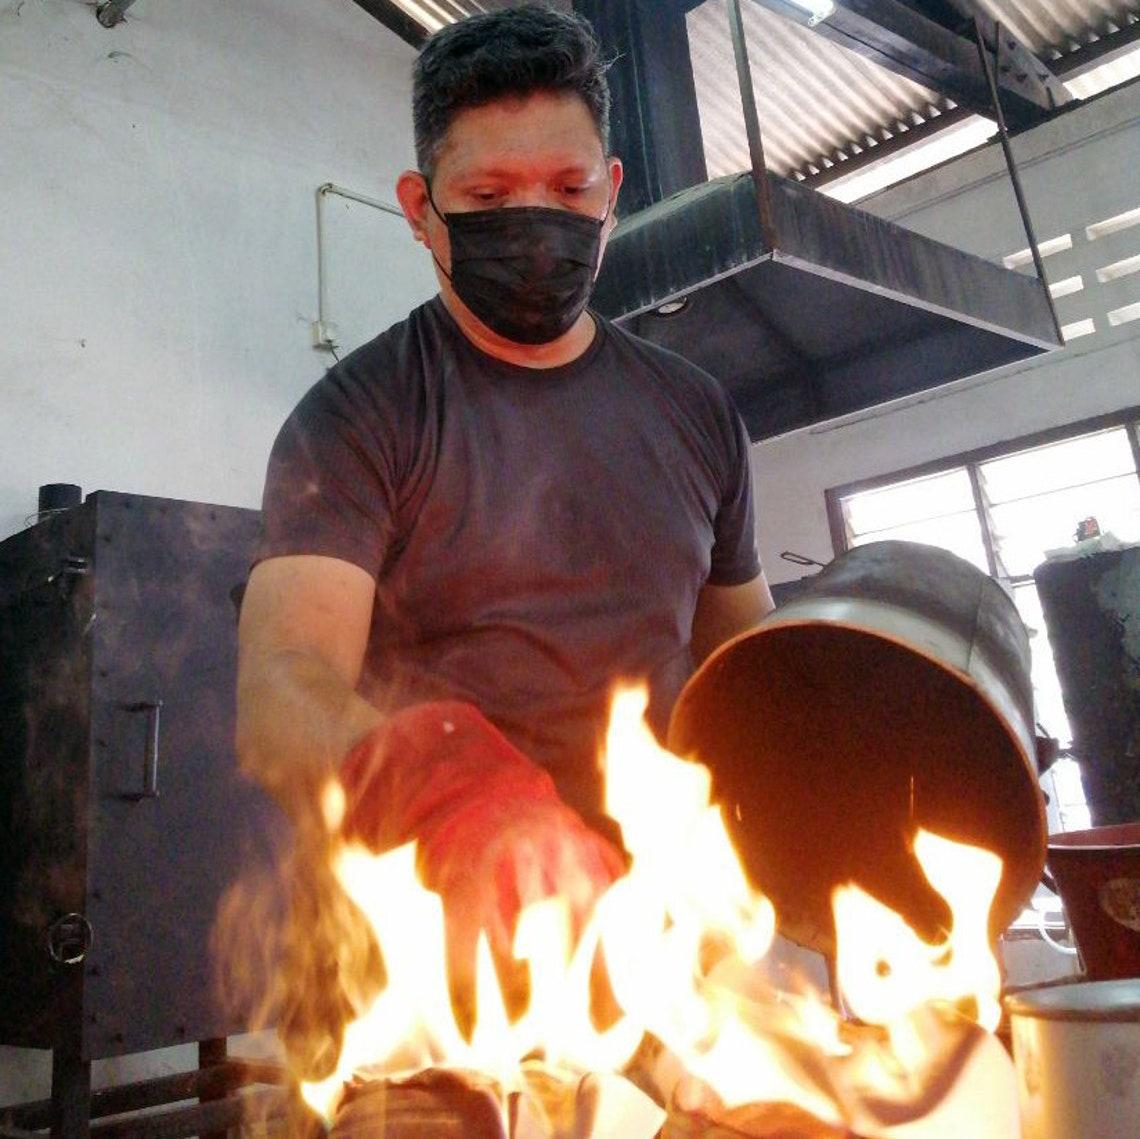 Malaysian Umi Raku Pottery Vase - Carbon Copper - Handmade Ceramic Home Decor For Sale